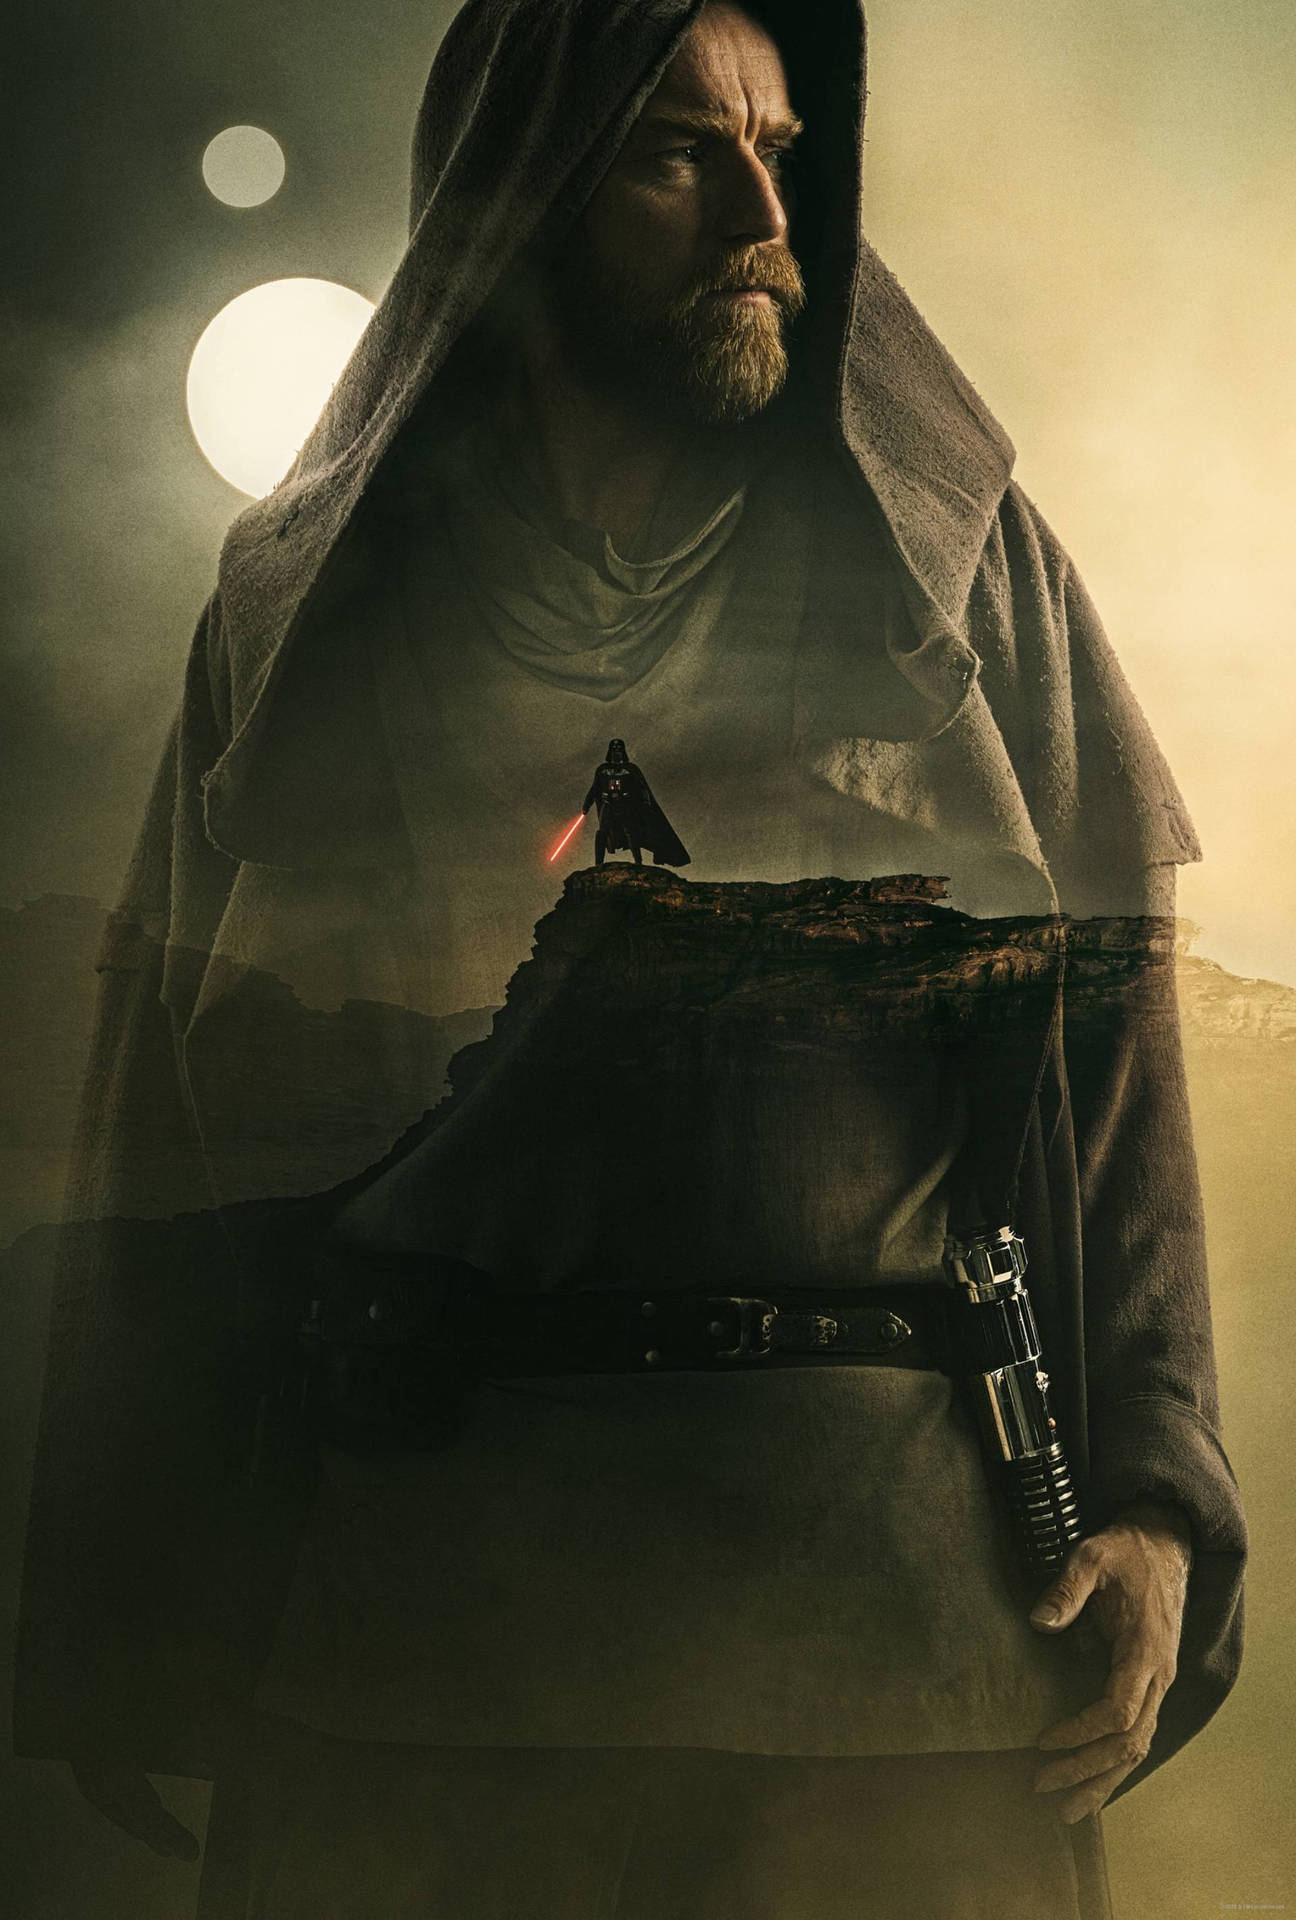 Obi Wan Kenobi Double-Exposure Poster Wallpaper